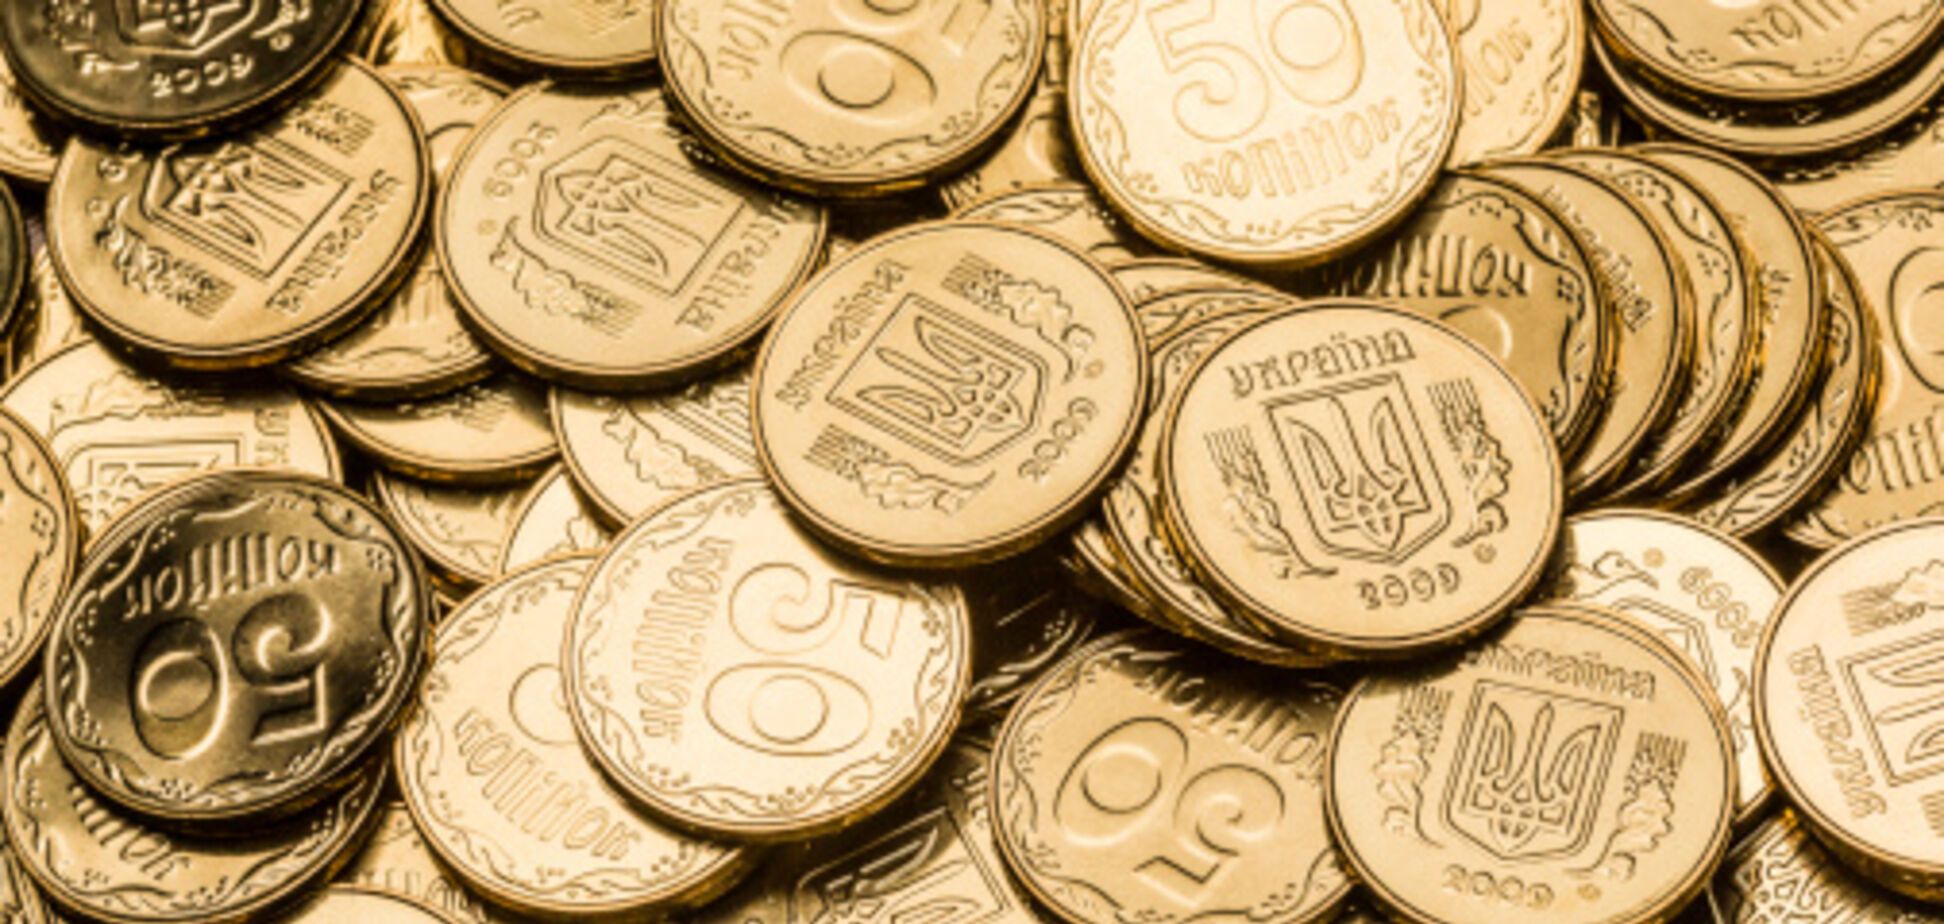 В Украине вводят новую монету в 10 грн: как выглядит